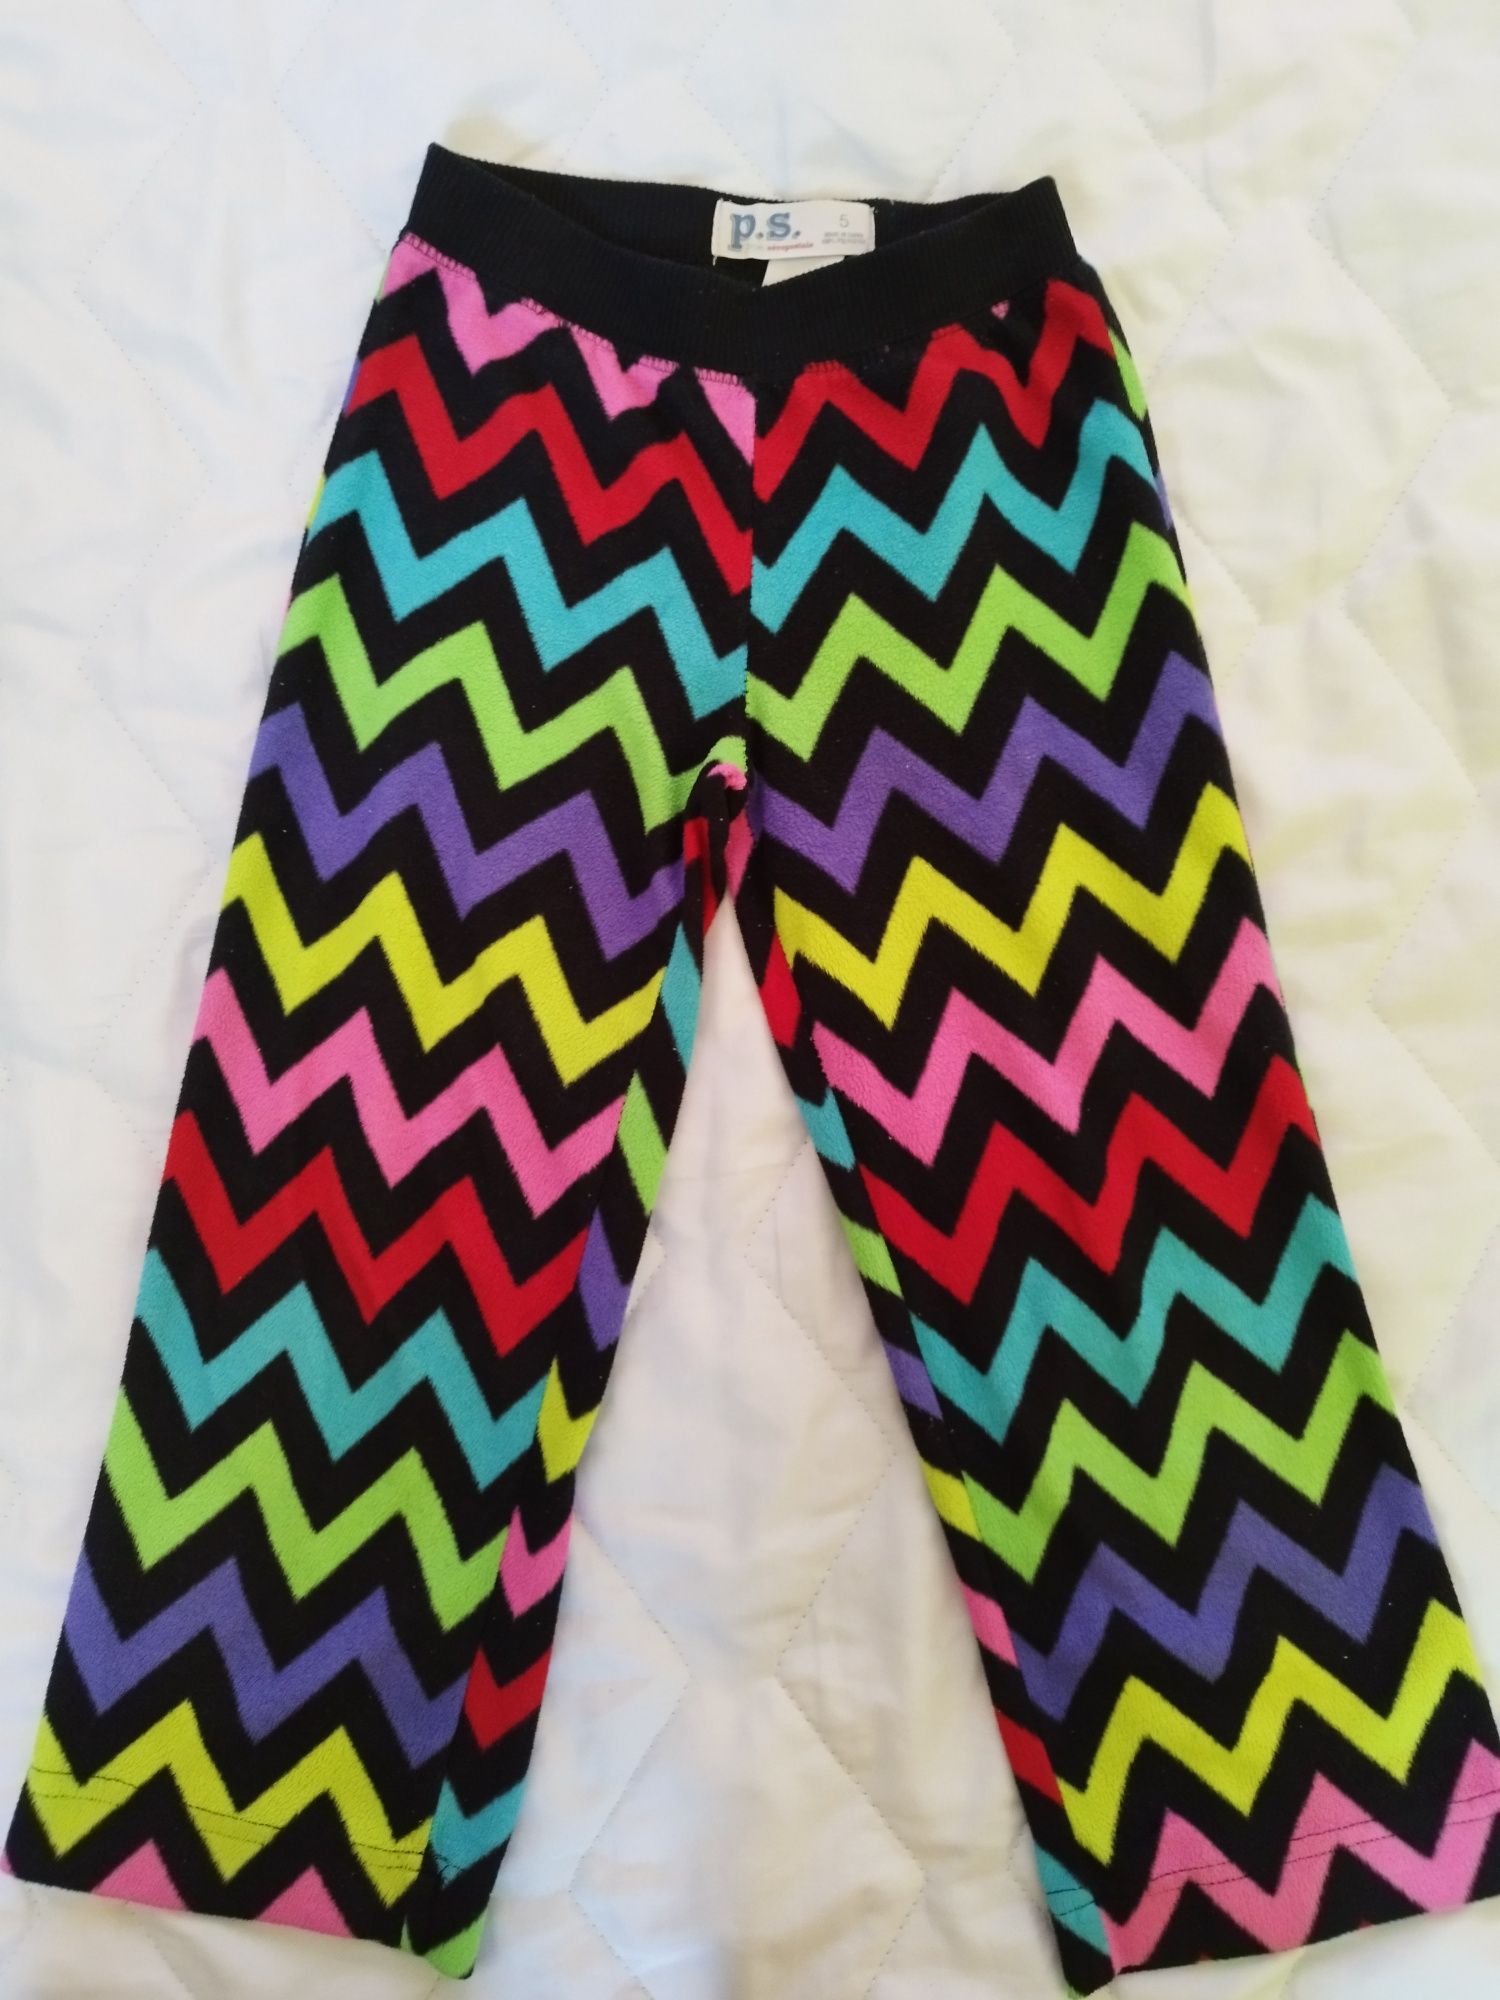 Spodnie dla dziewczynki (piżmowe) rozmiar 110